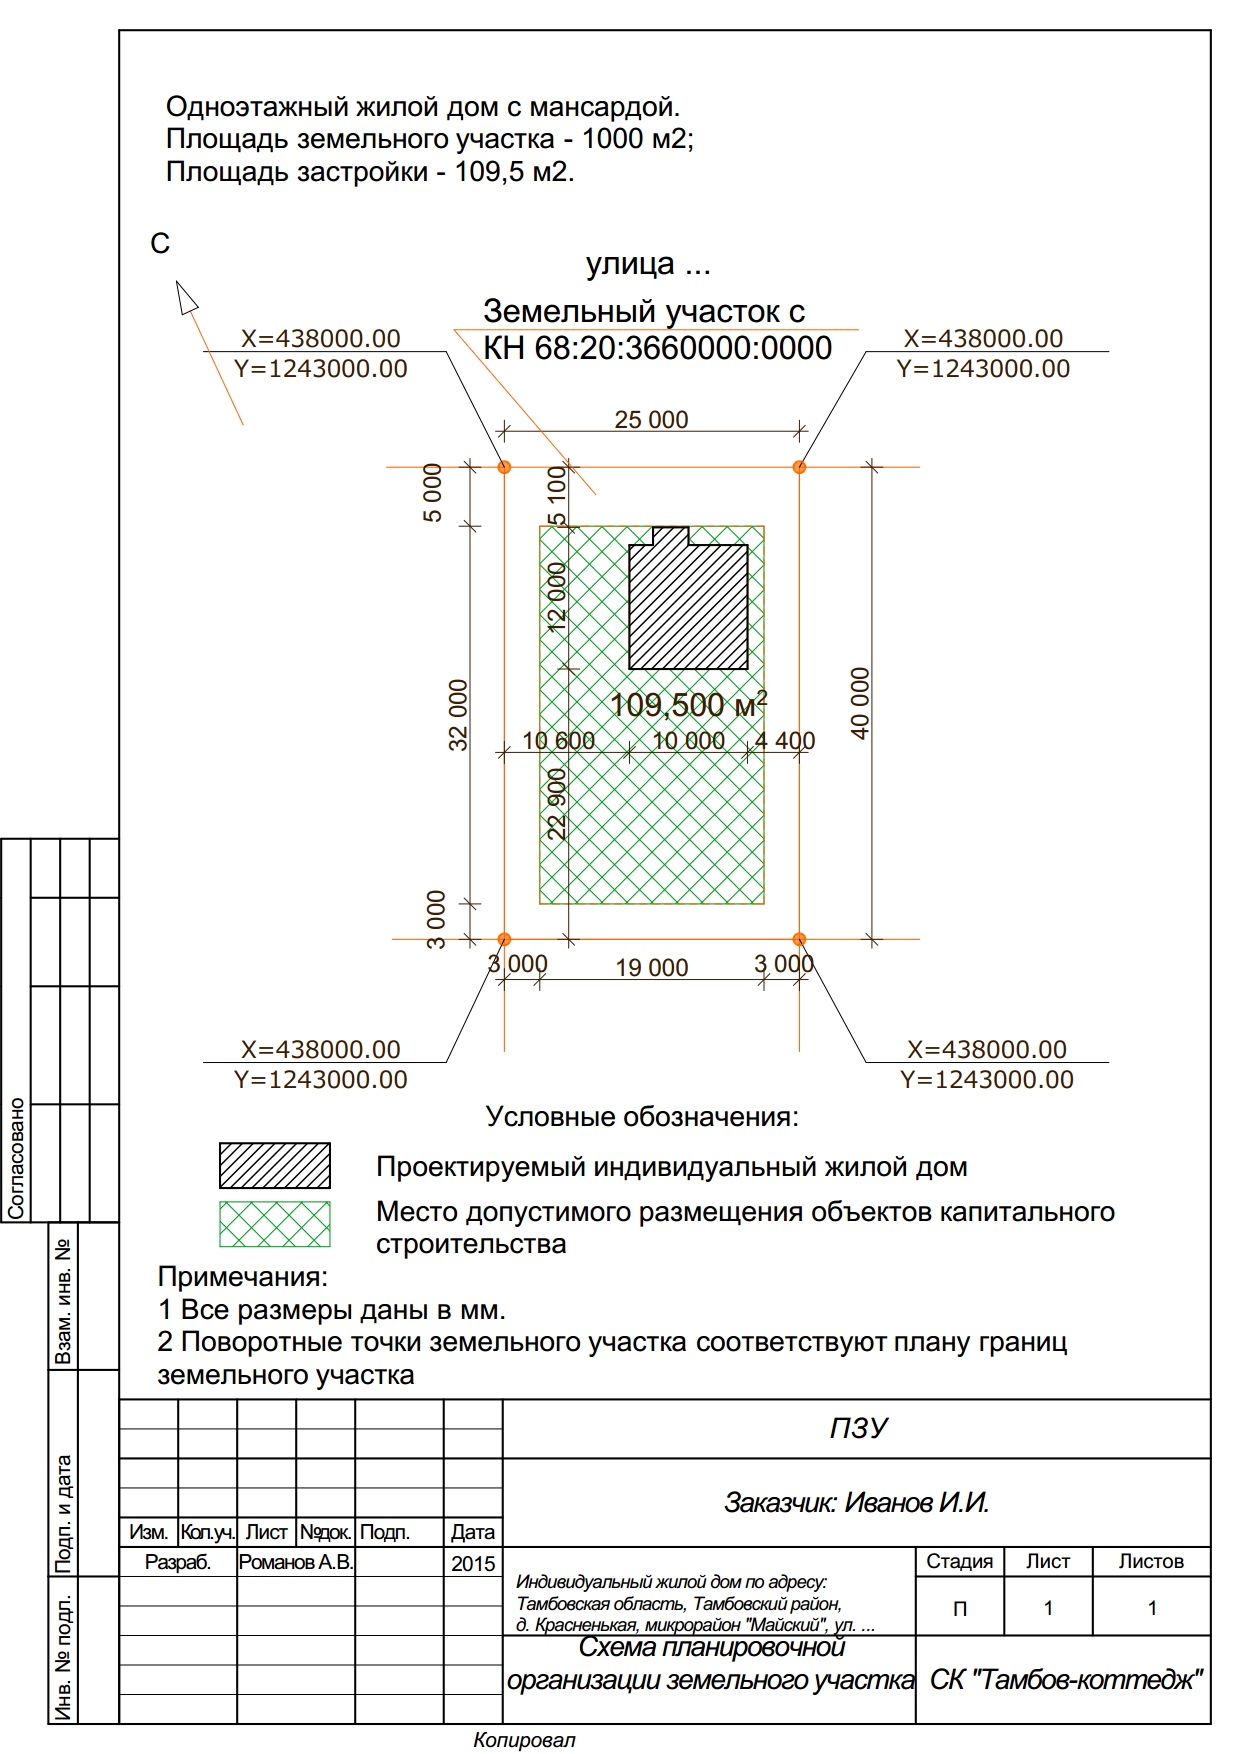 Схема планировочной организации земельного участка пример